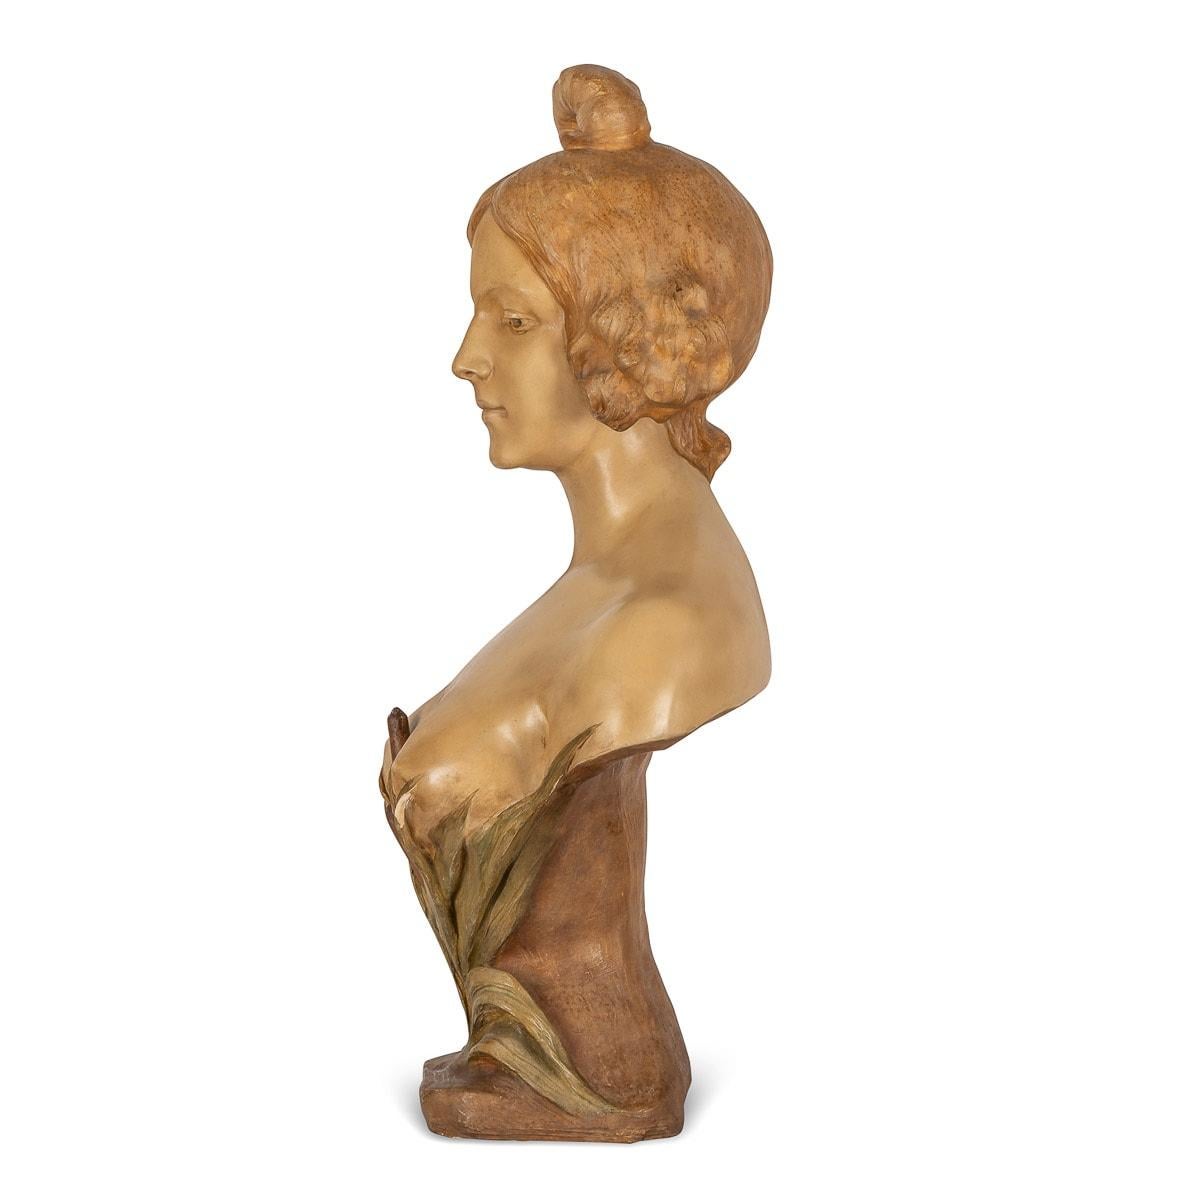 Sculpture ancienne en terre cuite du début du 20ème siècle, représentant un buste de femme. Cette sculpture est magnifiquement réalisée avec des détails fins et une belle patine. Signé par l'artiste italien A.Gori (Affortunato Gory 1895-1930).